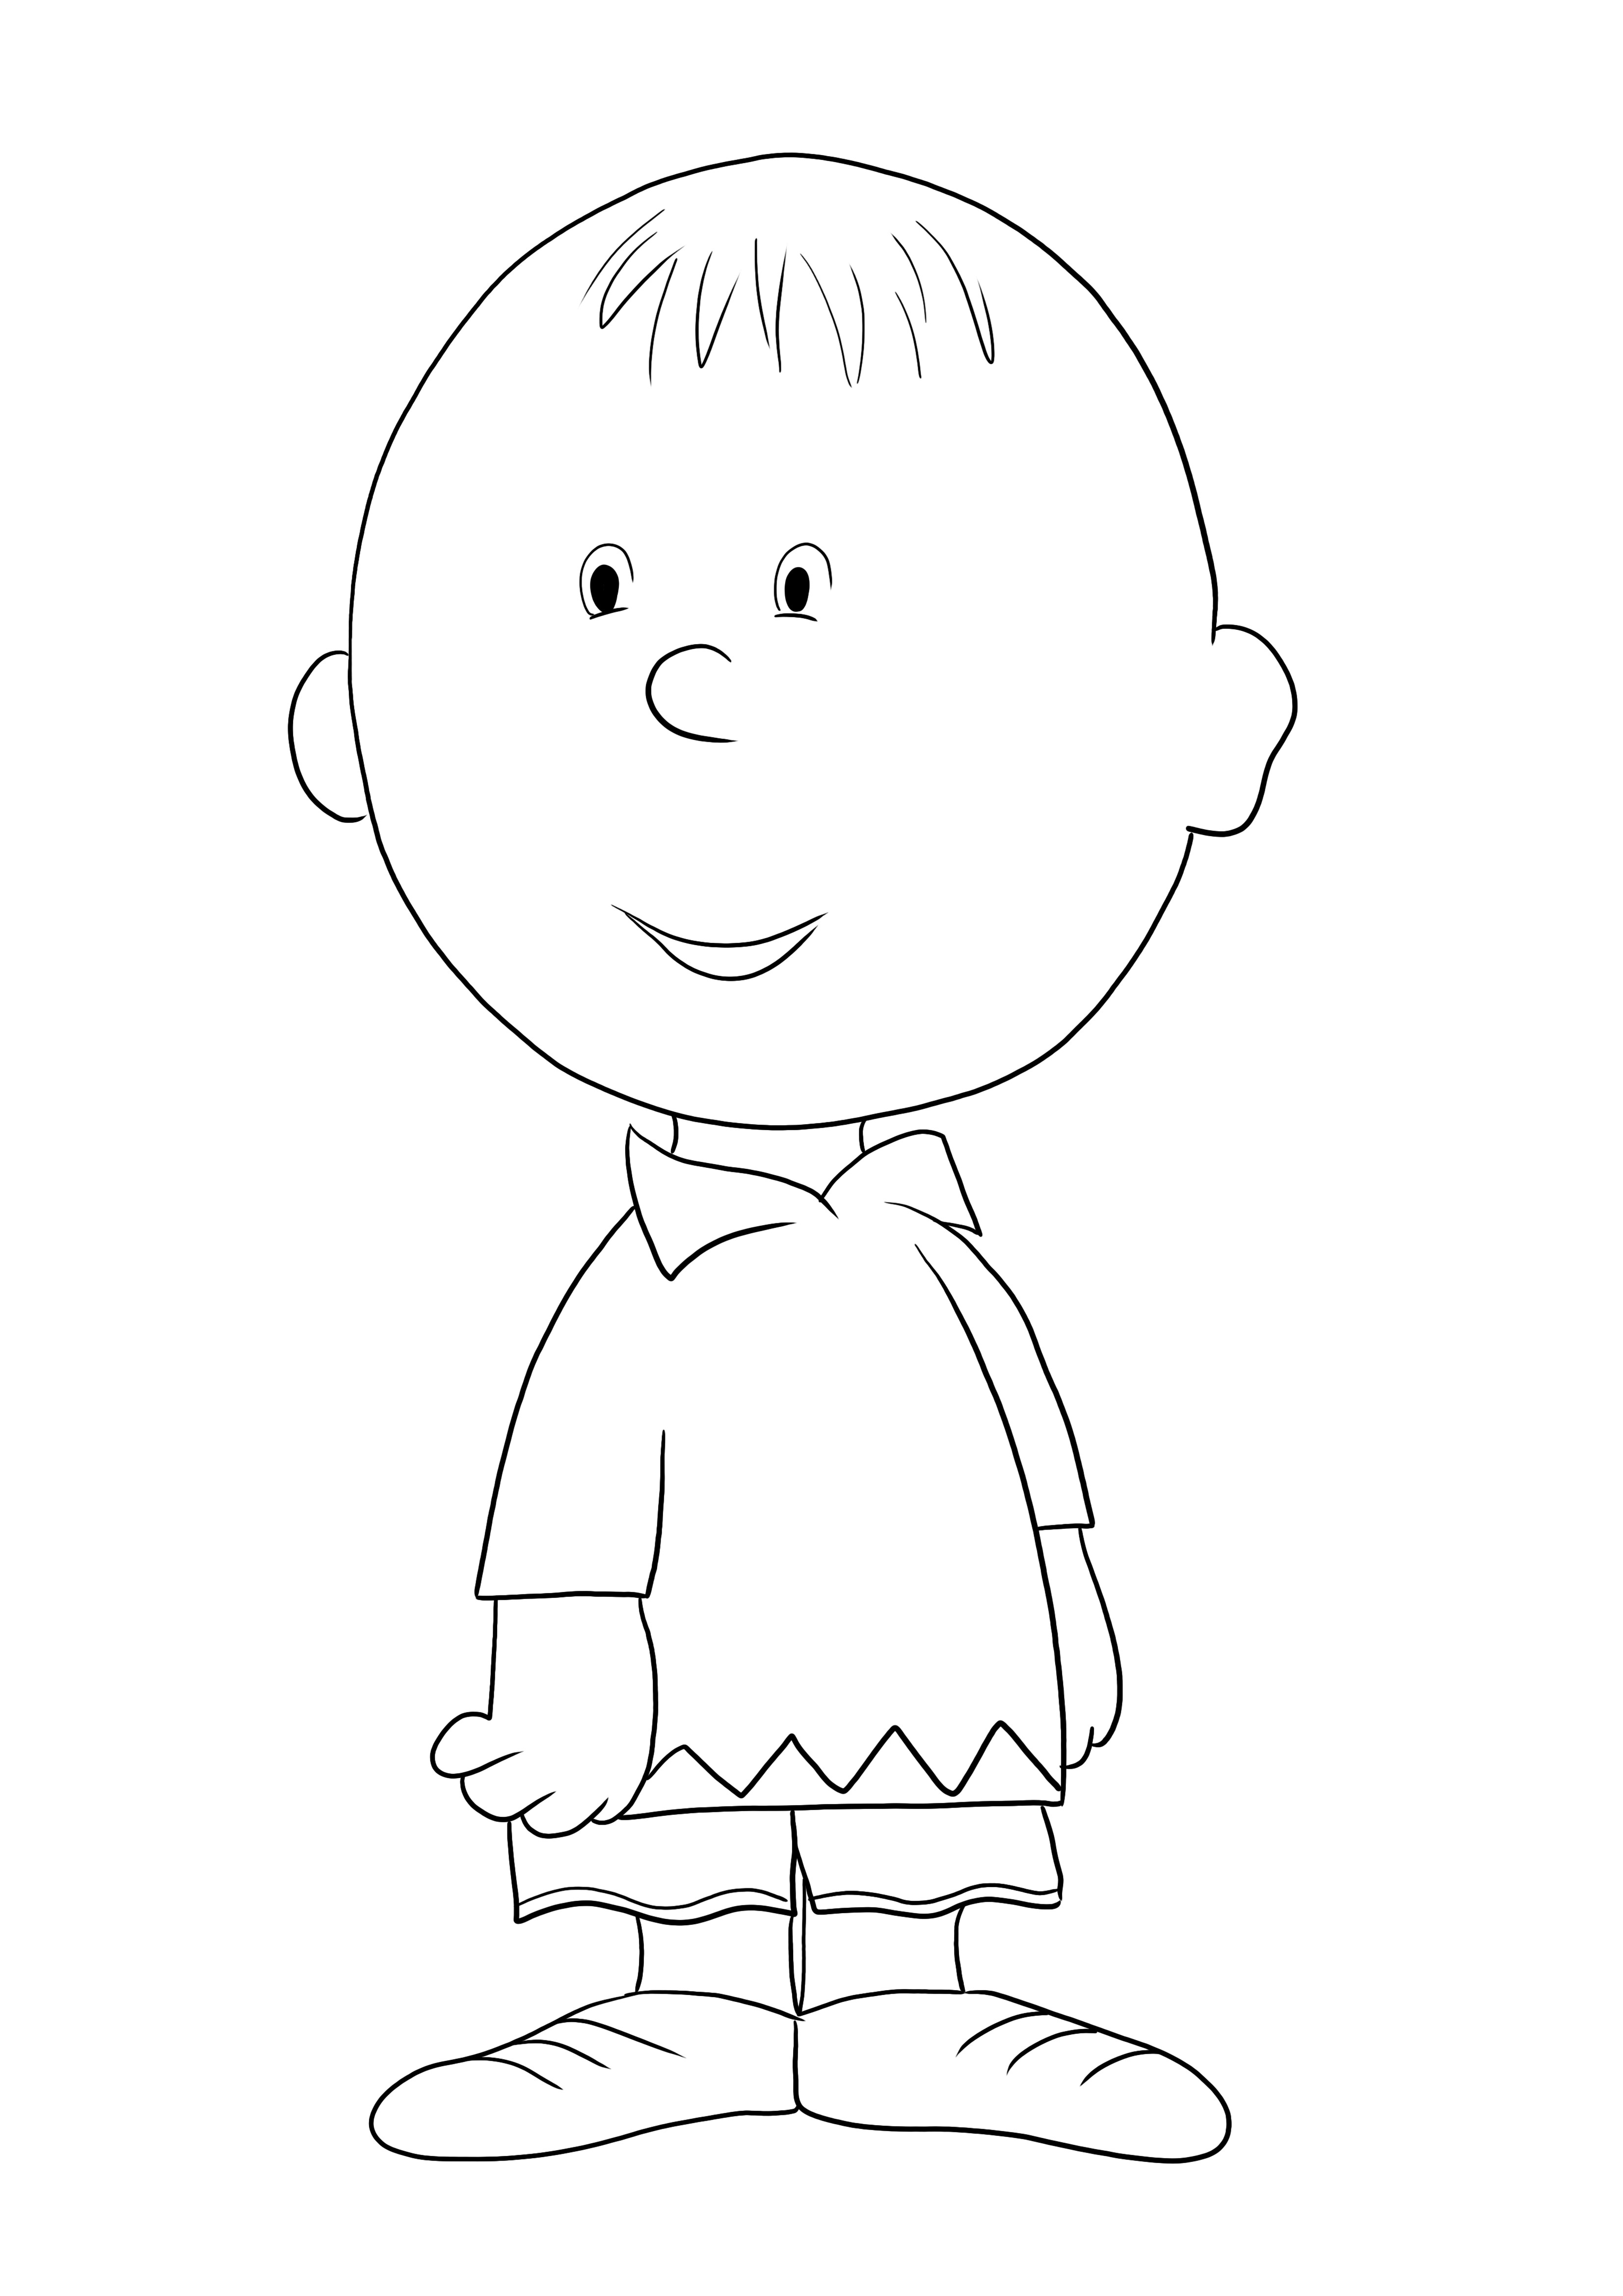 Desenho de Charlie Brown super fofo para imprimir ou baixar grátis para crianças